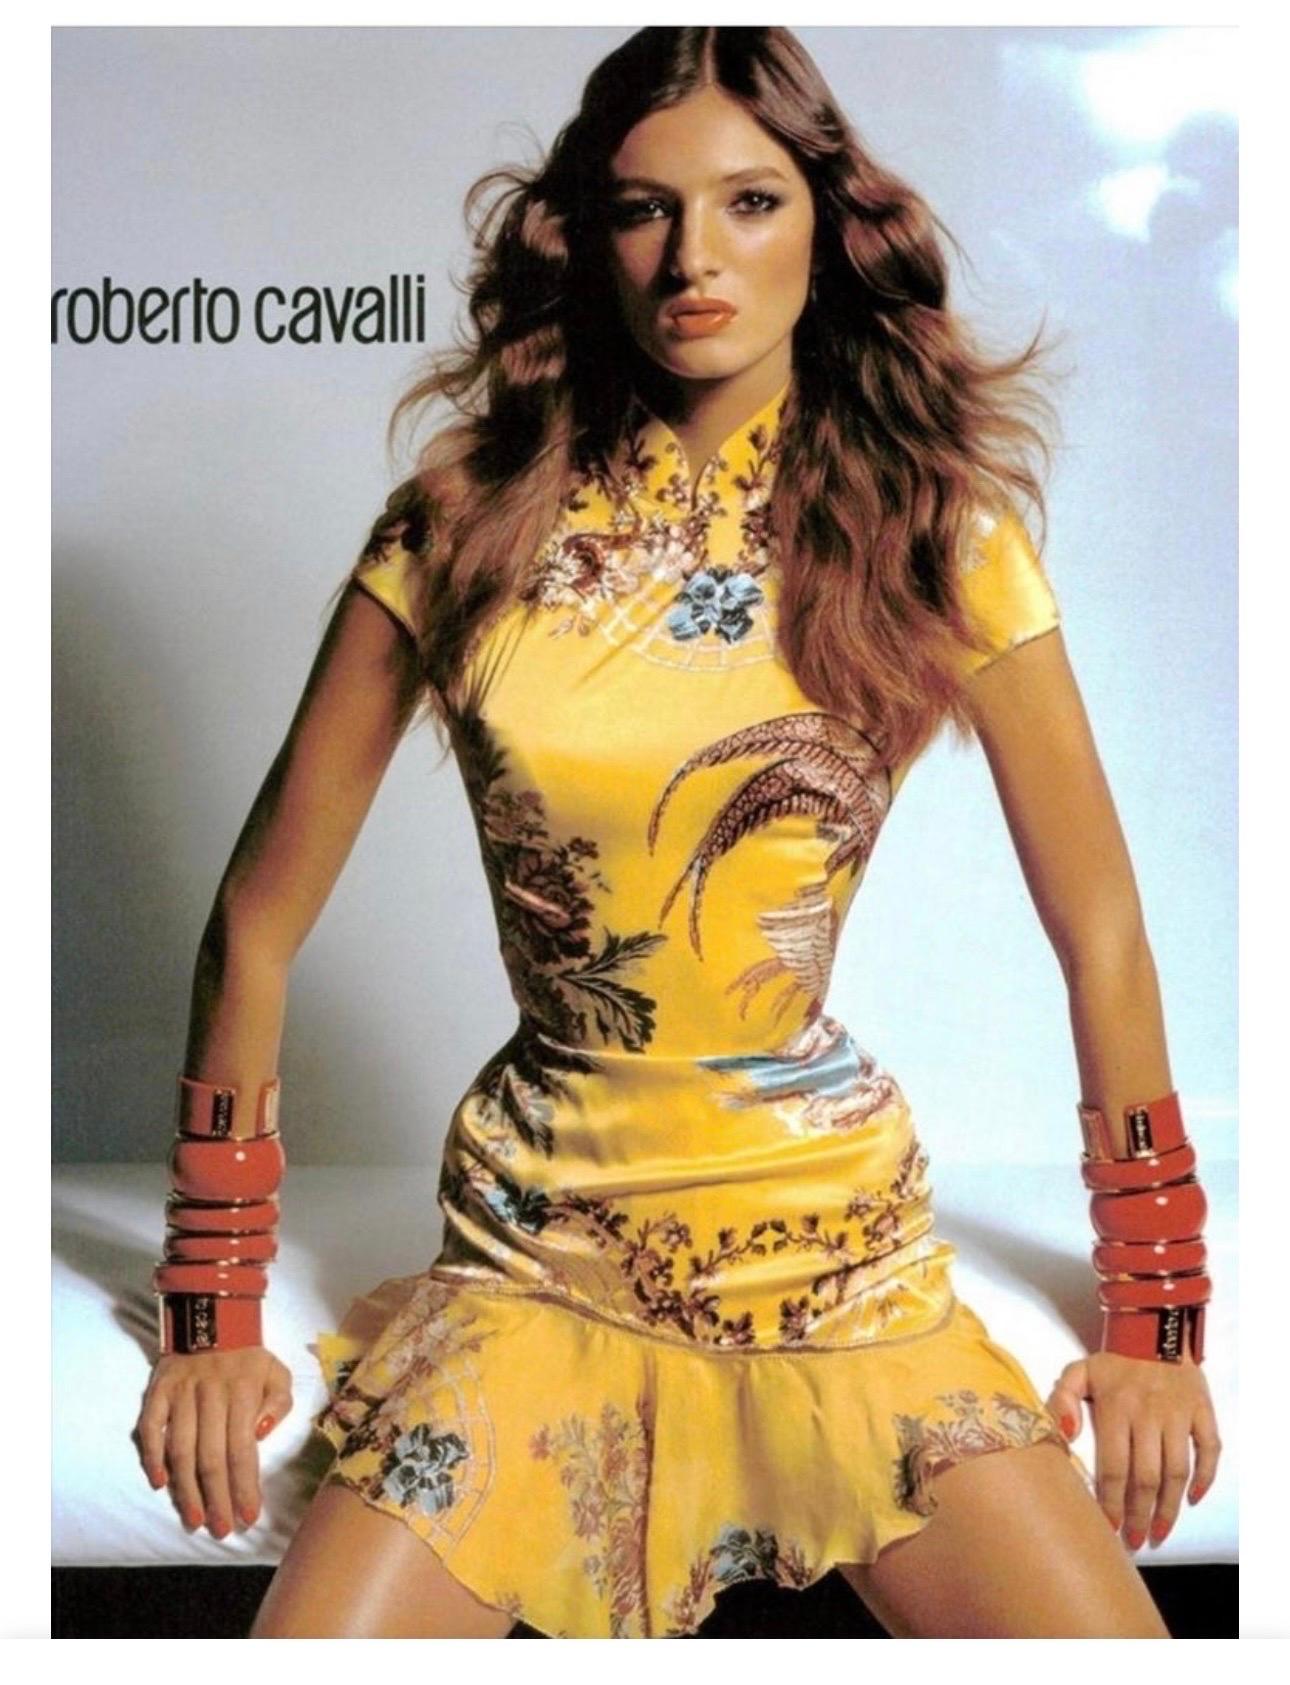 Roberto Cavalli S/S 2003 Runway Chinoiserie Cheongsam Silk Yellow Mini Dress For Sale 2